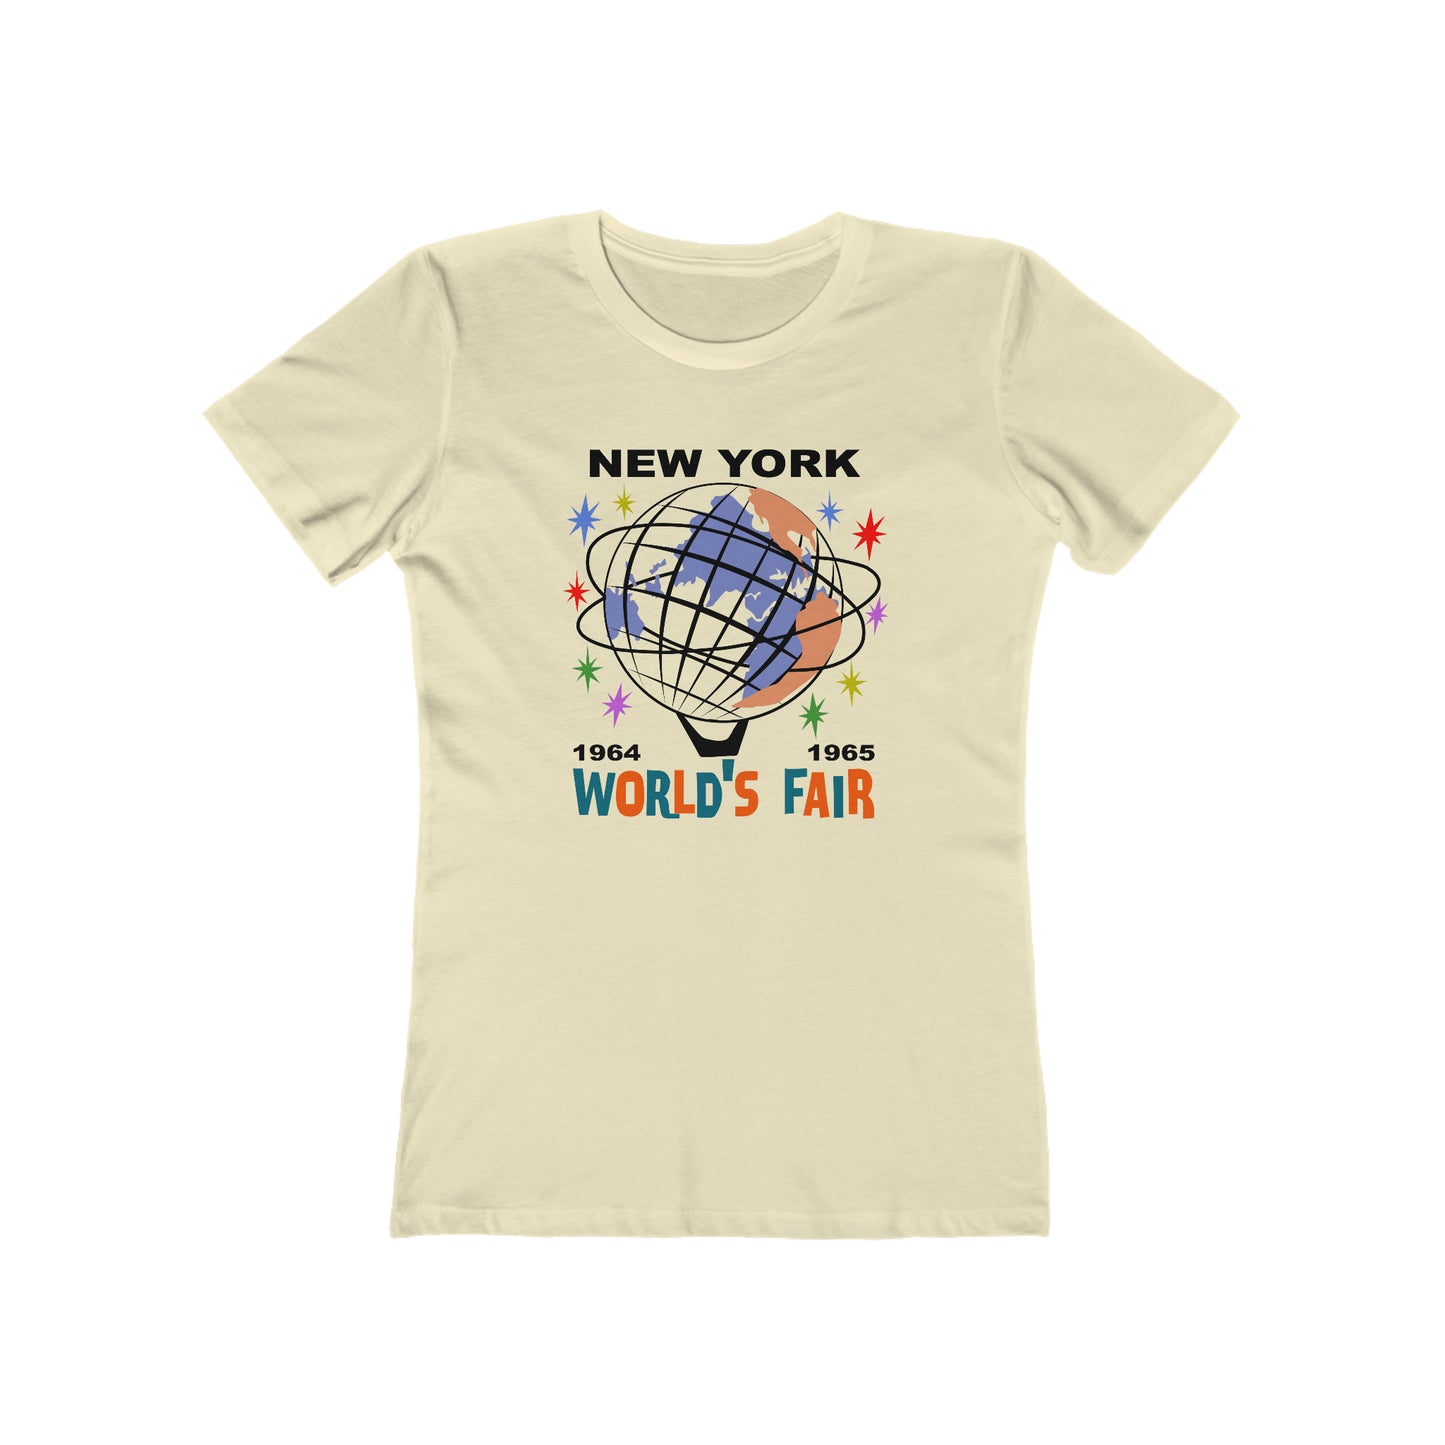 New York World's Fair - Women's T-Shirt